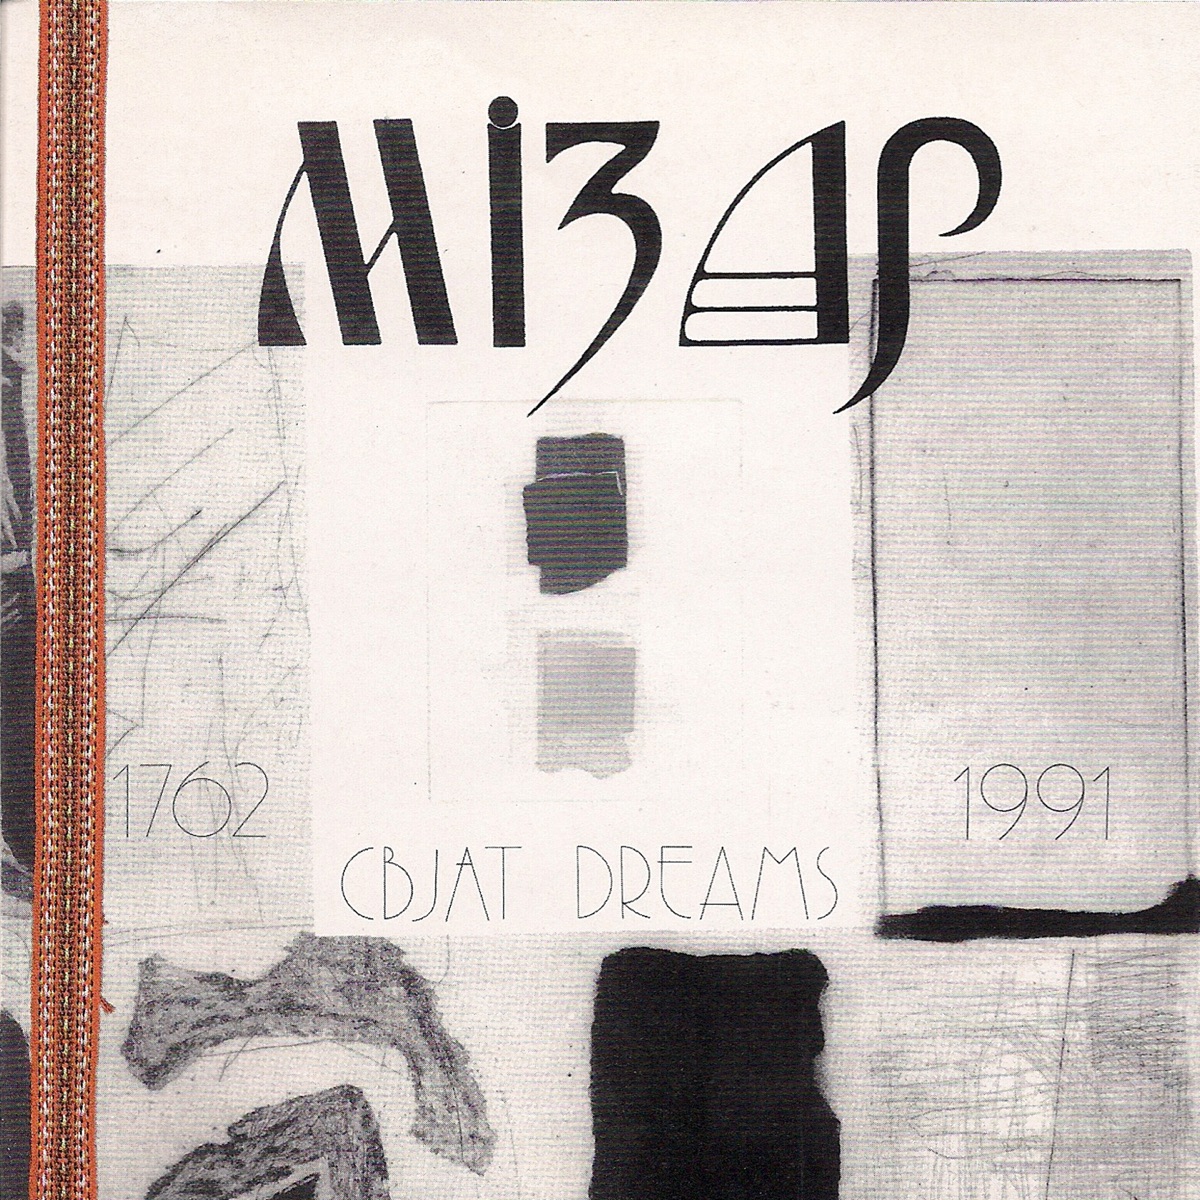 You are currently viewing Godišnjica objavljivanja albuma Svjat Dreams 1762-1991 grupe Mizar